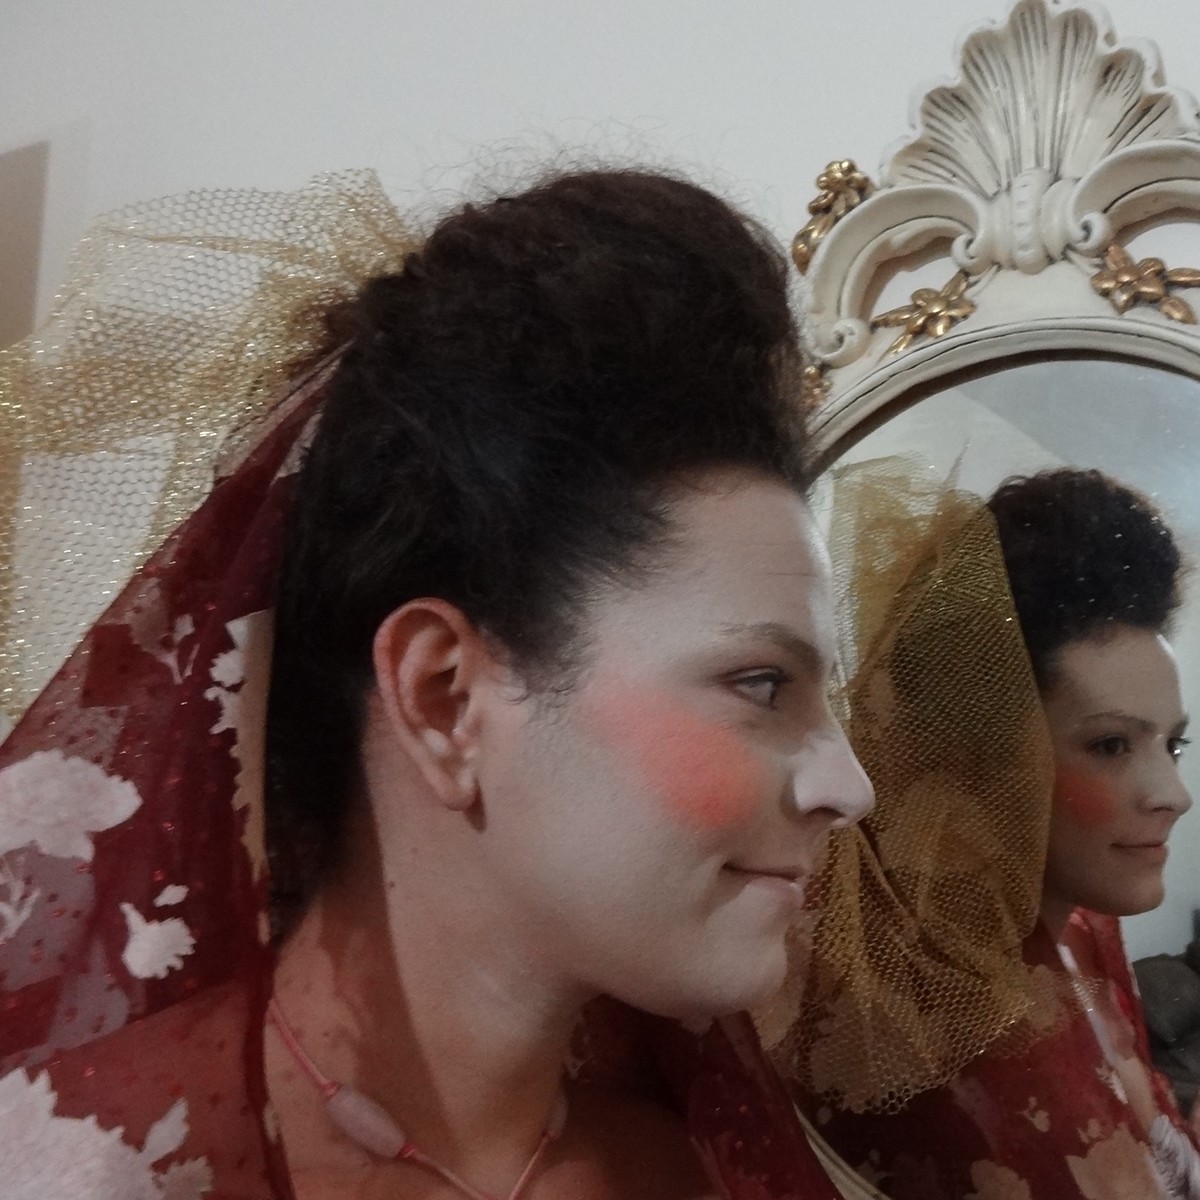 maquiagem fantasia festa make make-up fantasy Adorno faces autoral penteado